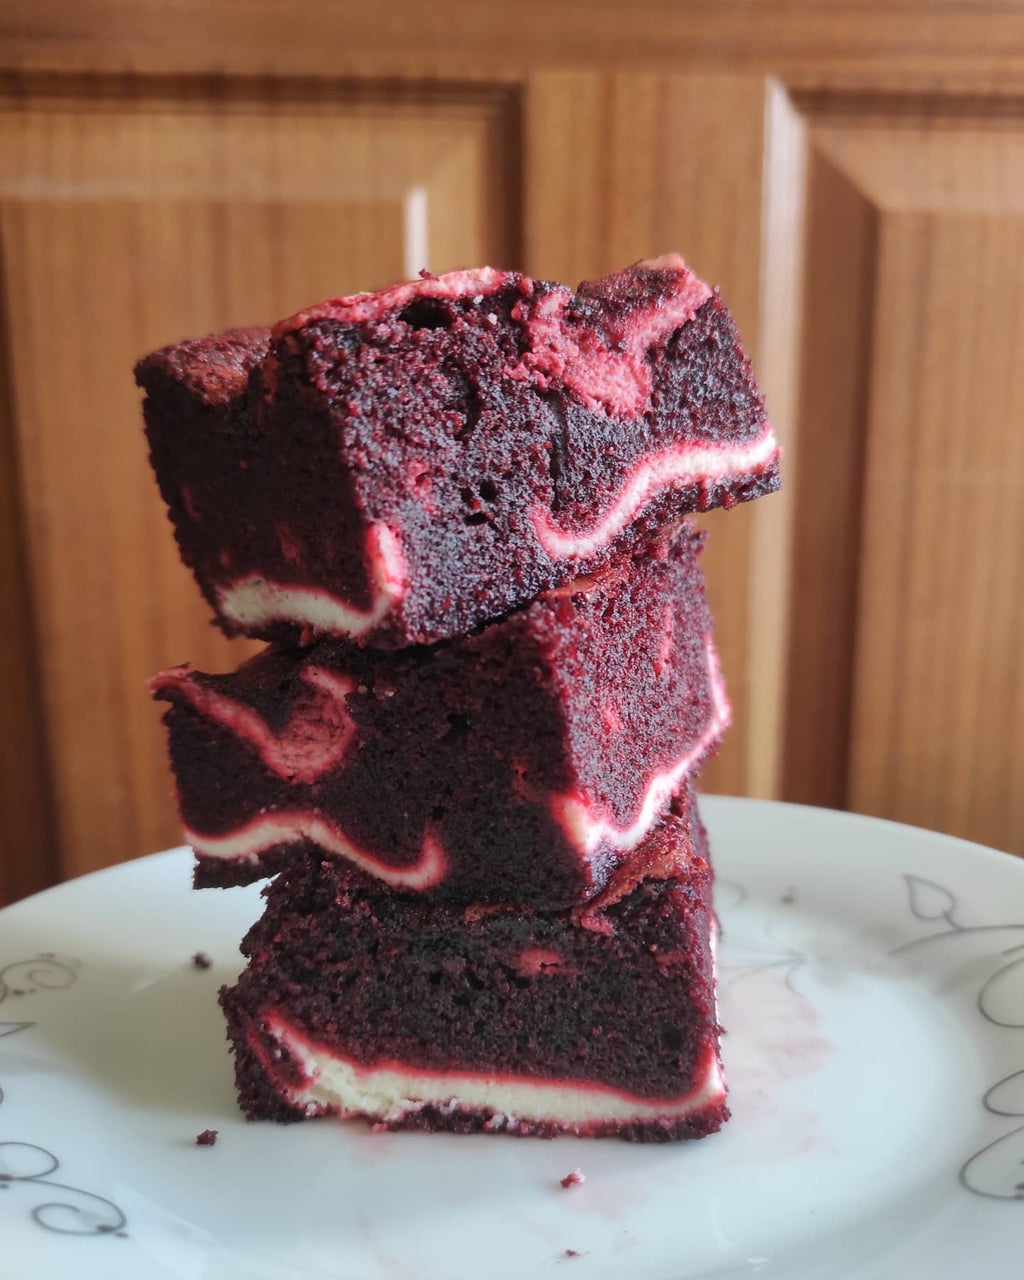 Red velvet cheesecake brownies